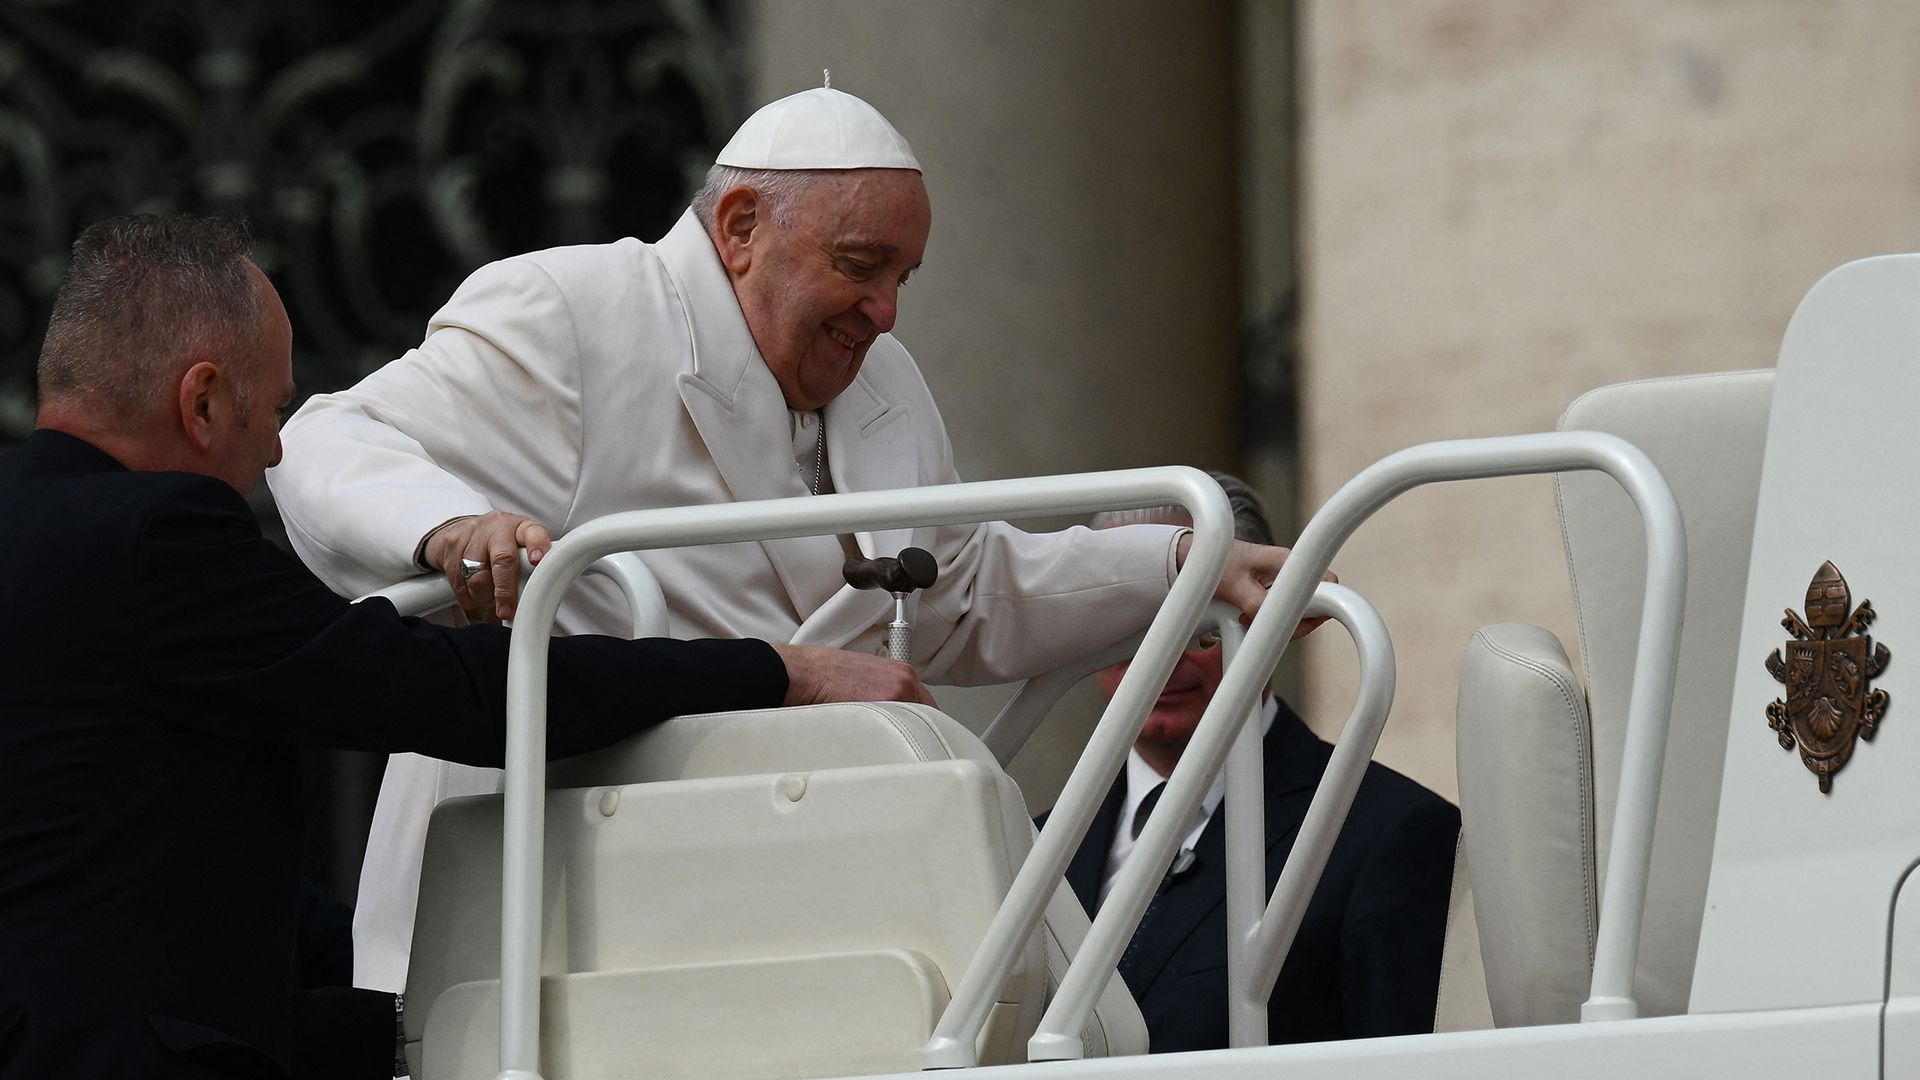 El Papa Francisco es ayudado a subir al papamóvil (Photo by Vincenzo PINTO / AFP)